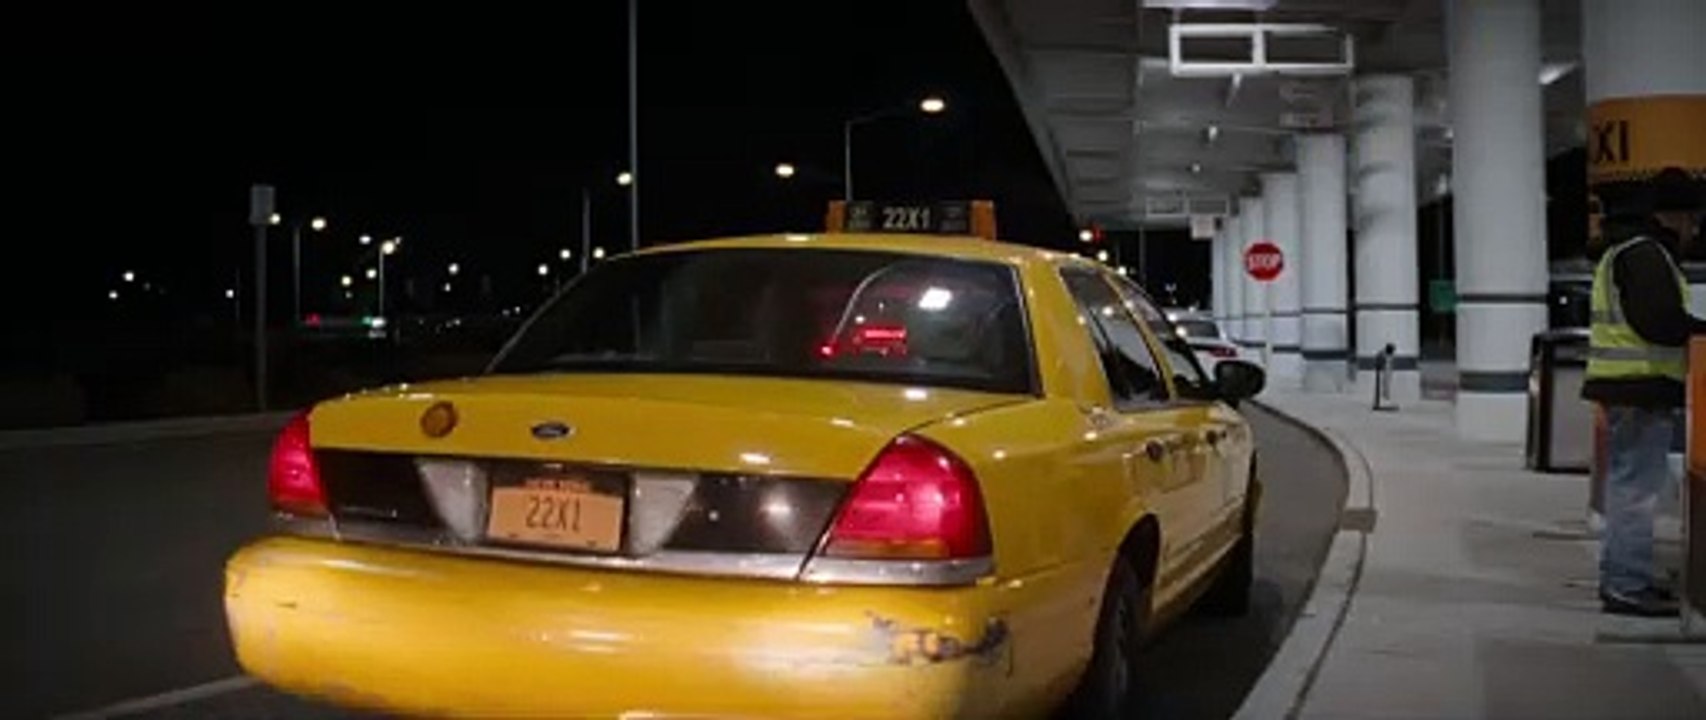 Daddio - Eine Nacht in New York Trailer (2) OV